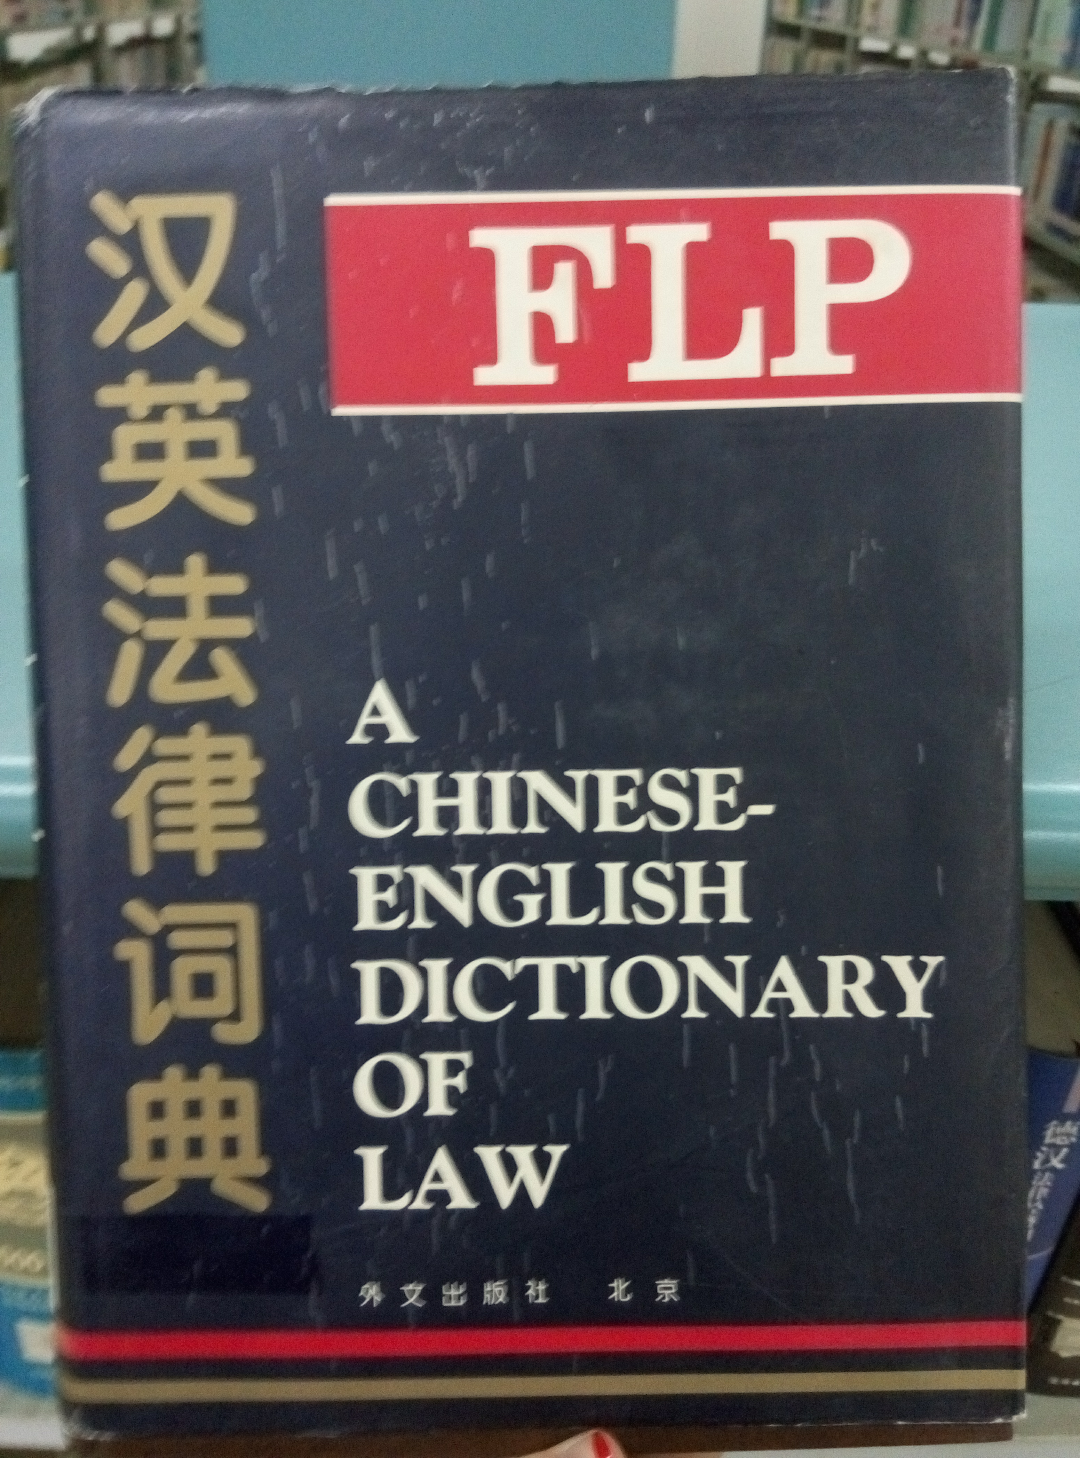 有没有一款专业的法律英语翻译软件? - 锦瑟的